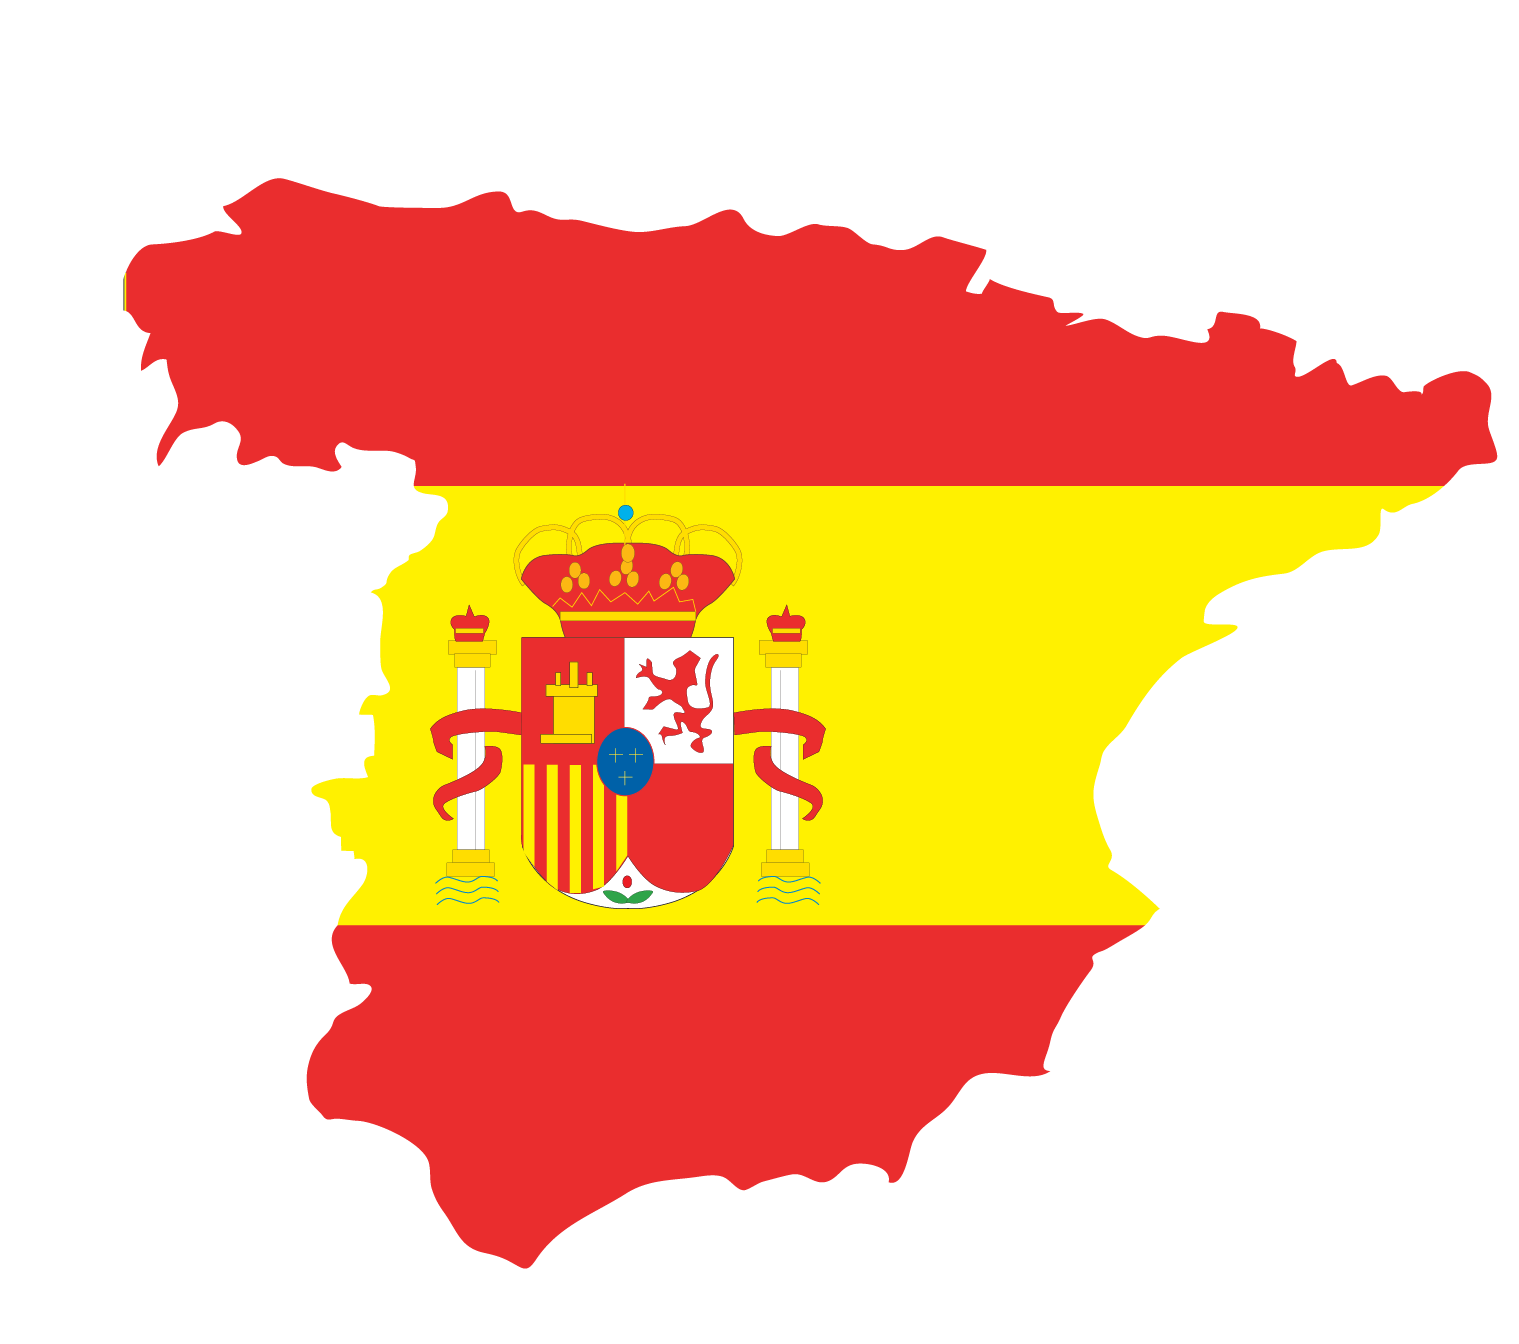 İspanya'da Uzun Süreli Oturum (Residencia de larga duración) İzni: Başvuru Süreci ve Detaylı Bilgi